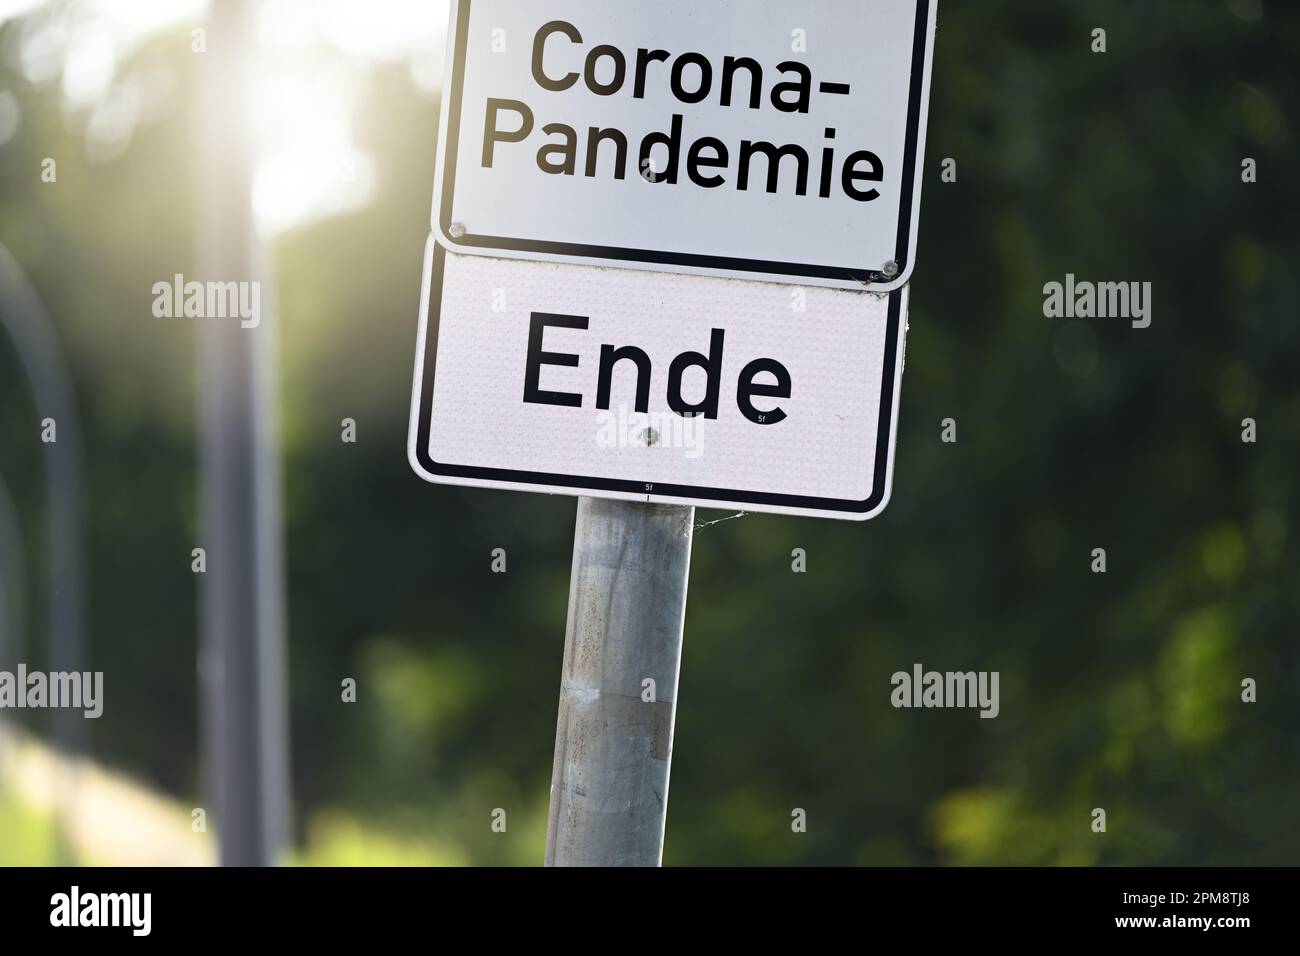 FOTOMONTAGE, Schild mit Aufschrift Corona-Pandemie und Schild mit Aufschrift Ende, Symbolfoto Ende der Corona-Pandemie Stock Photo